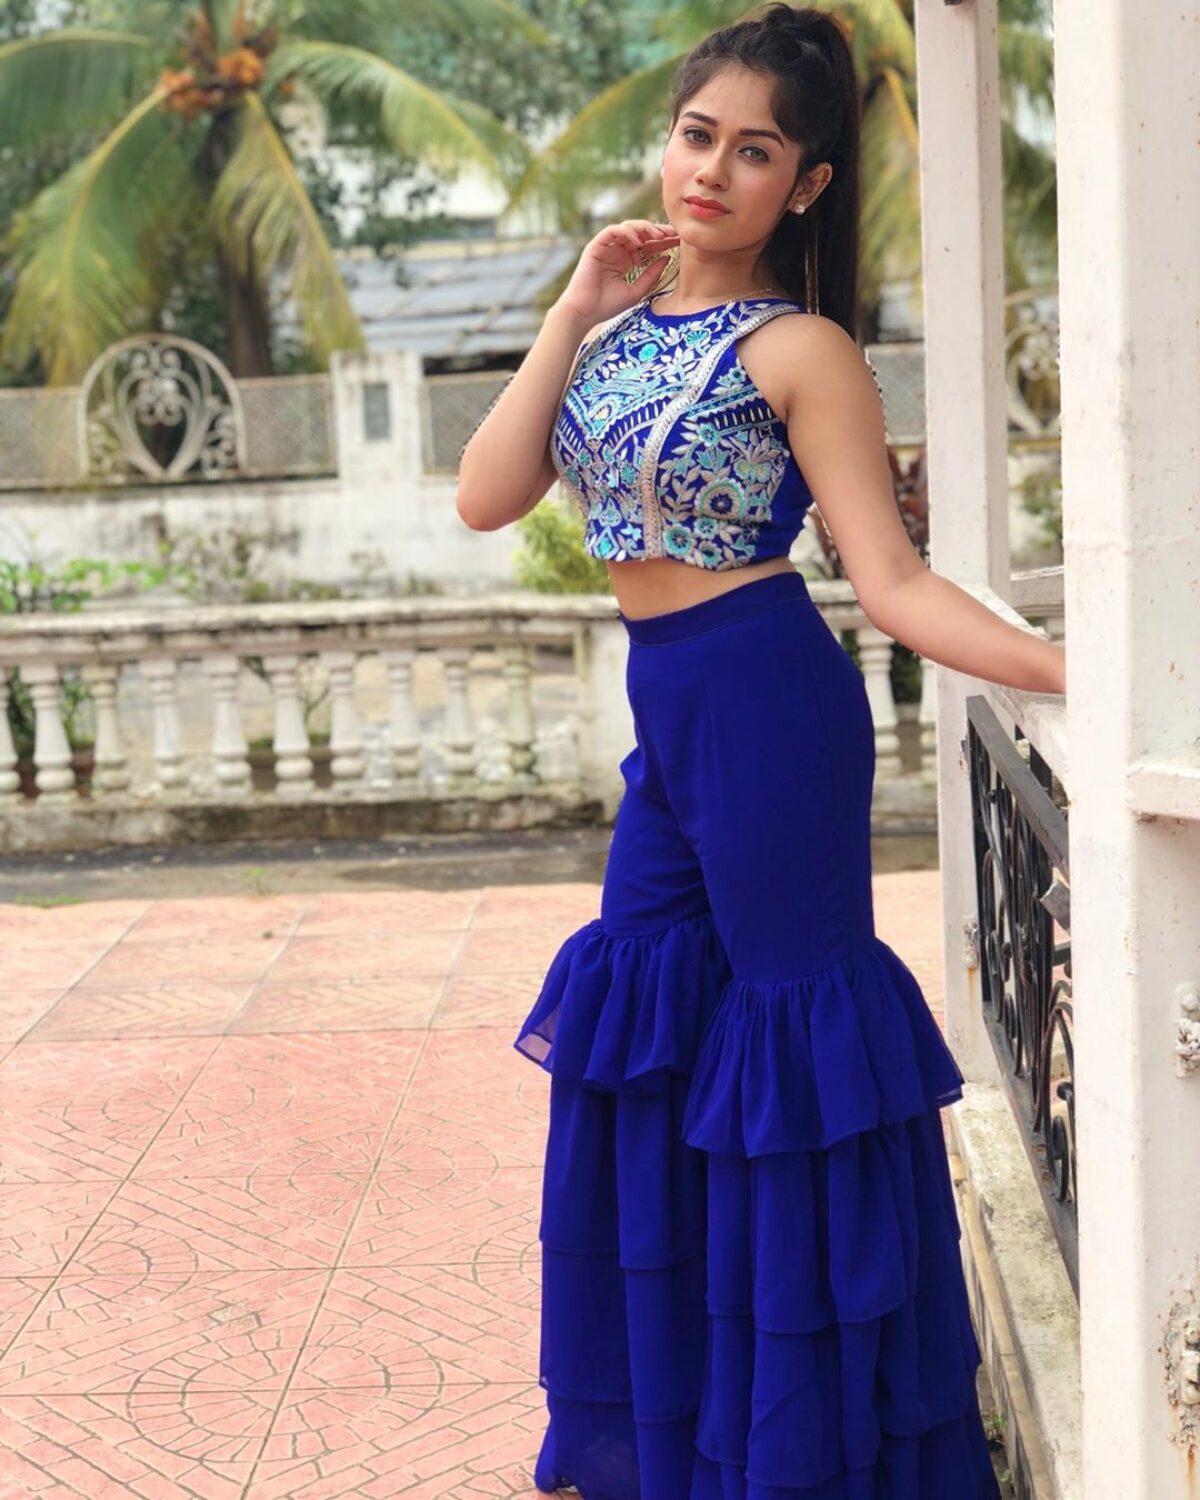 Jannat Zubair Rahmani is Pretty Looks in a Shiny Dress